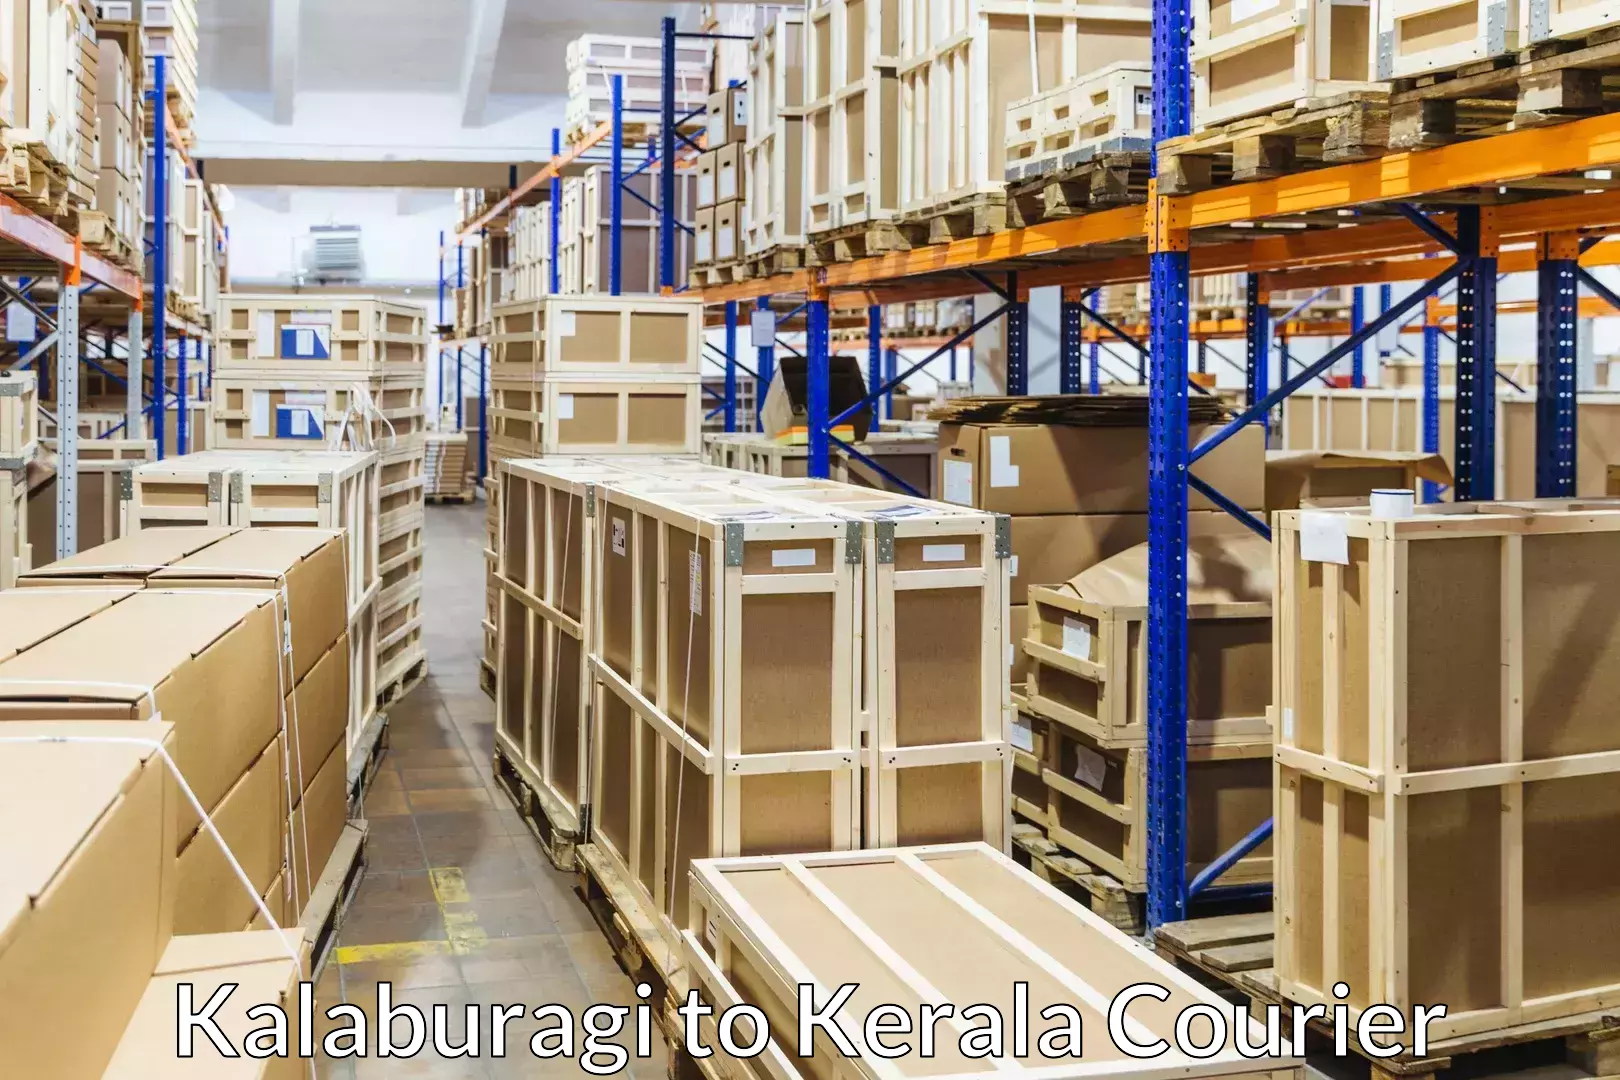 Furniture moving plans Kalaburagi to Kerala